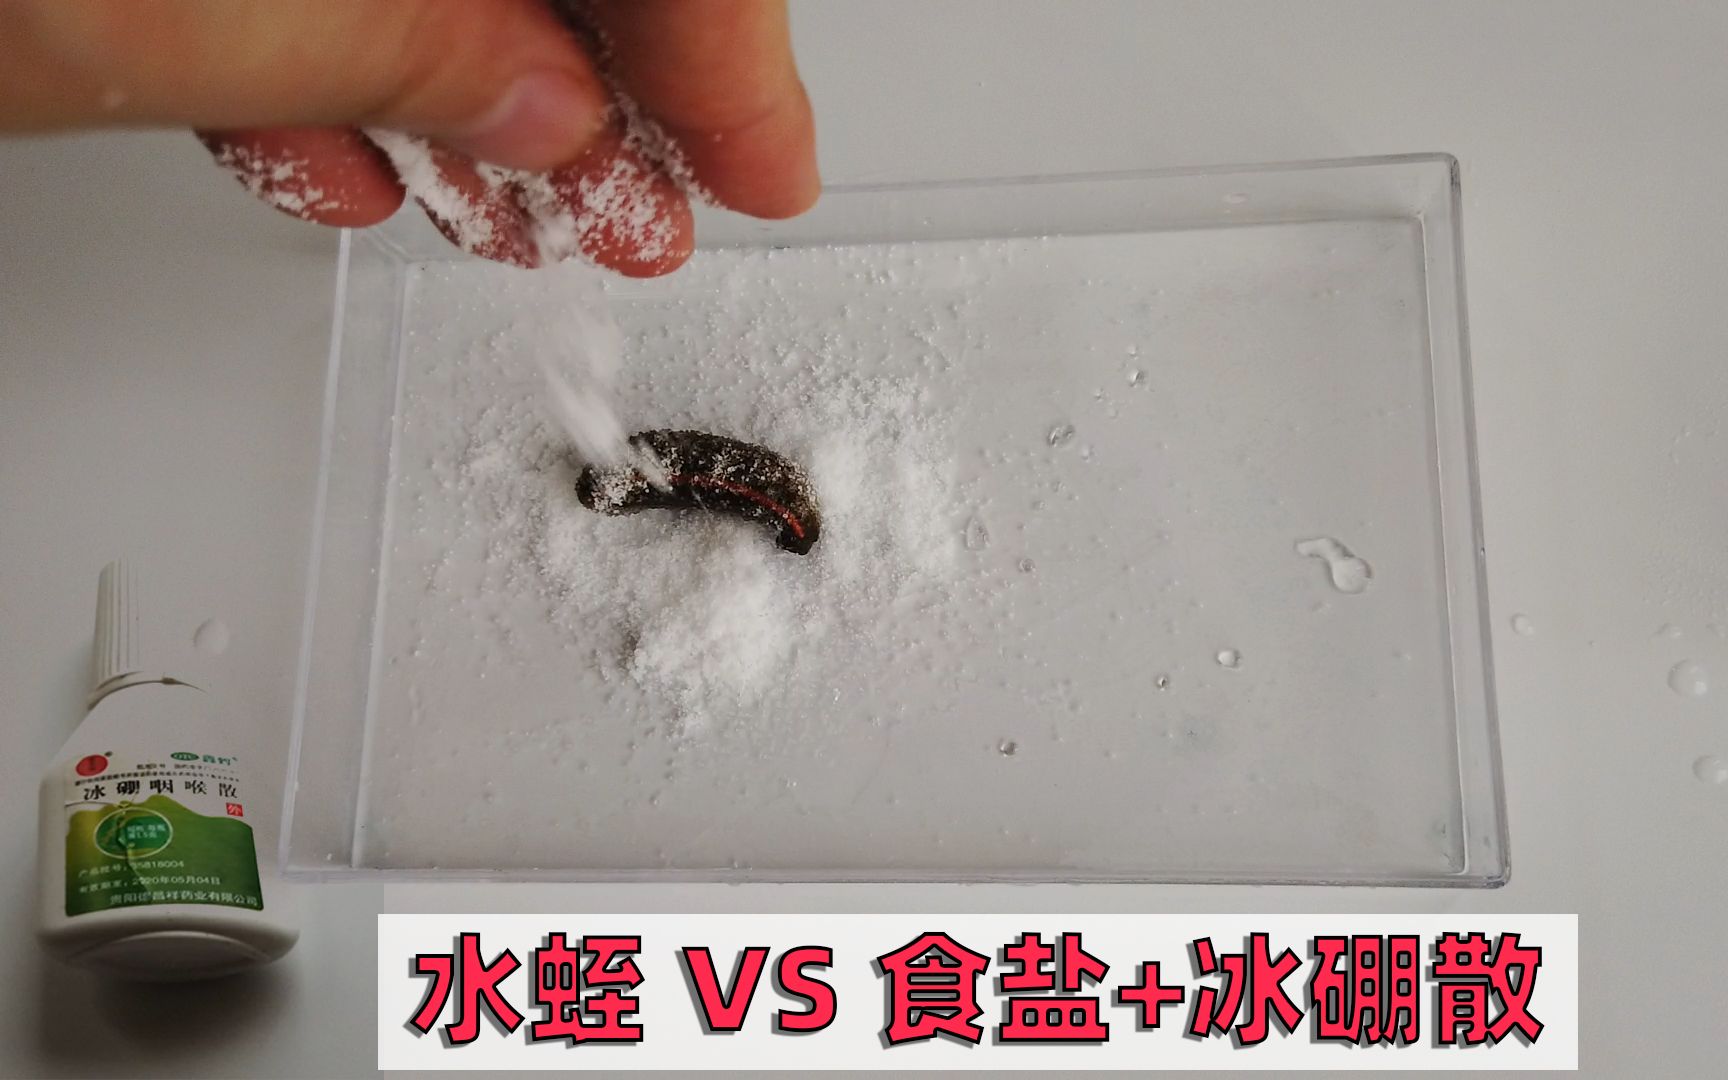 当水蛭(蚂蟥)遇到食盐和冰硼散,猜猜哪个反应会更大?